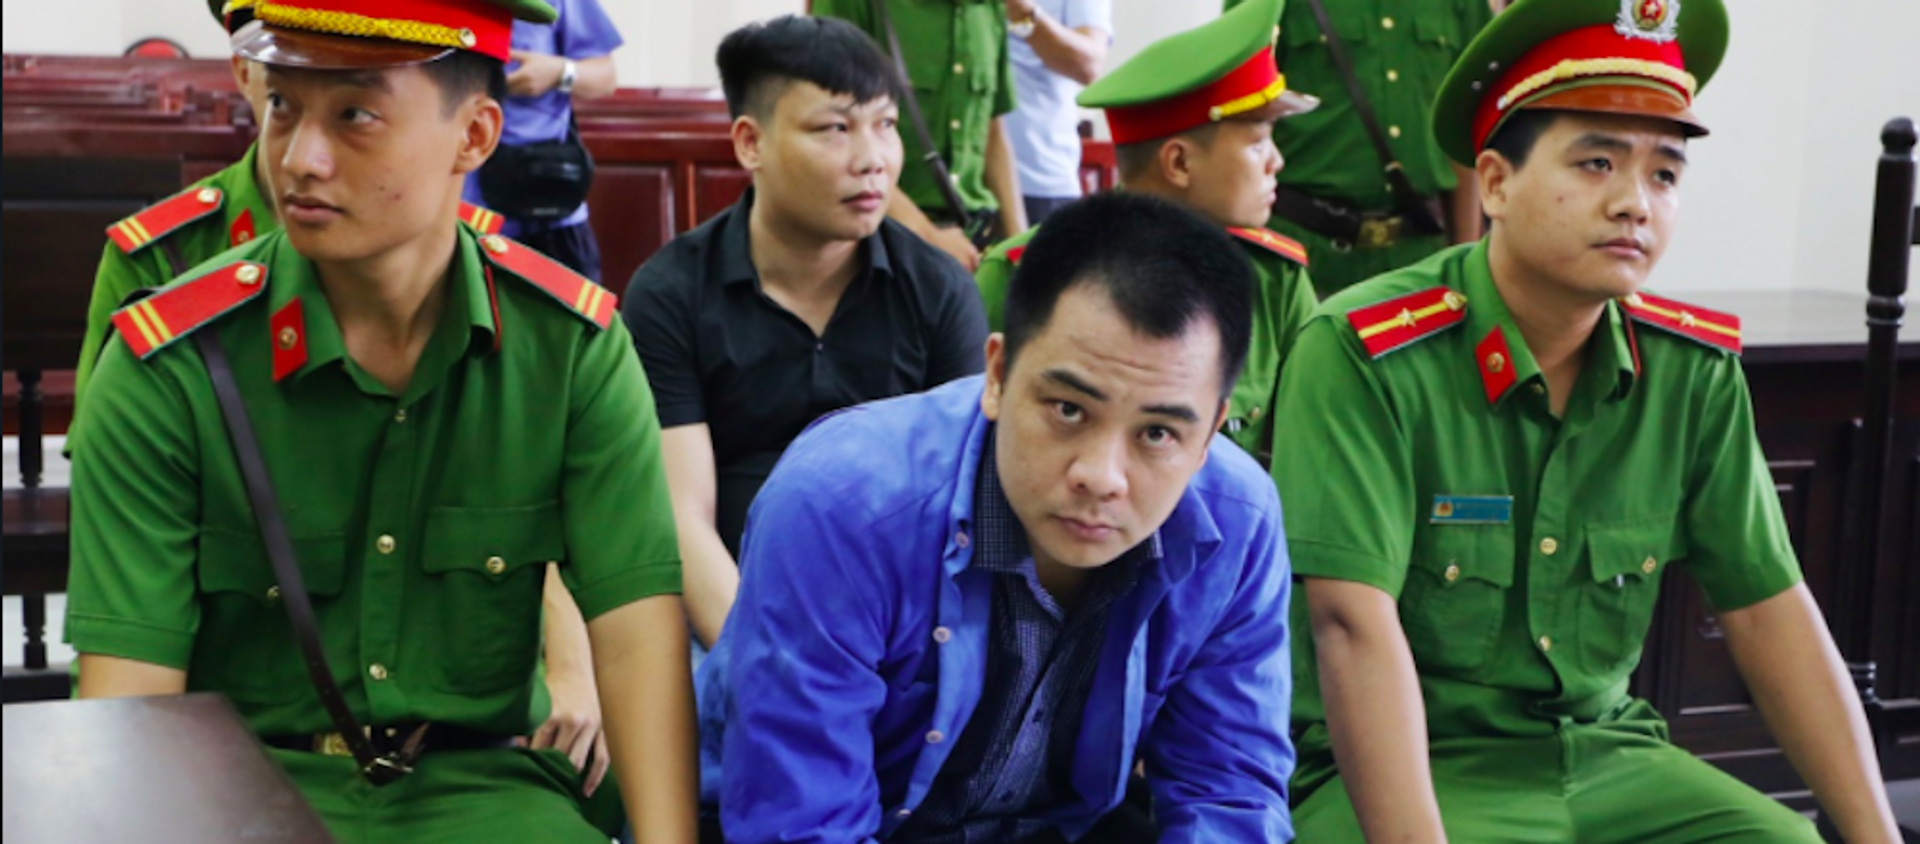 Giang 36 cầm đầu nhóm gây rối trật tự công cộng bị tuyên án 4 năm tù. - Sputnik Việt Nam, 1920, 18.05.2020